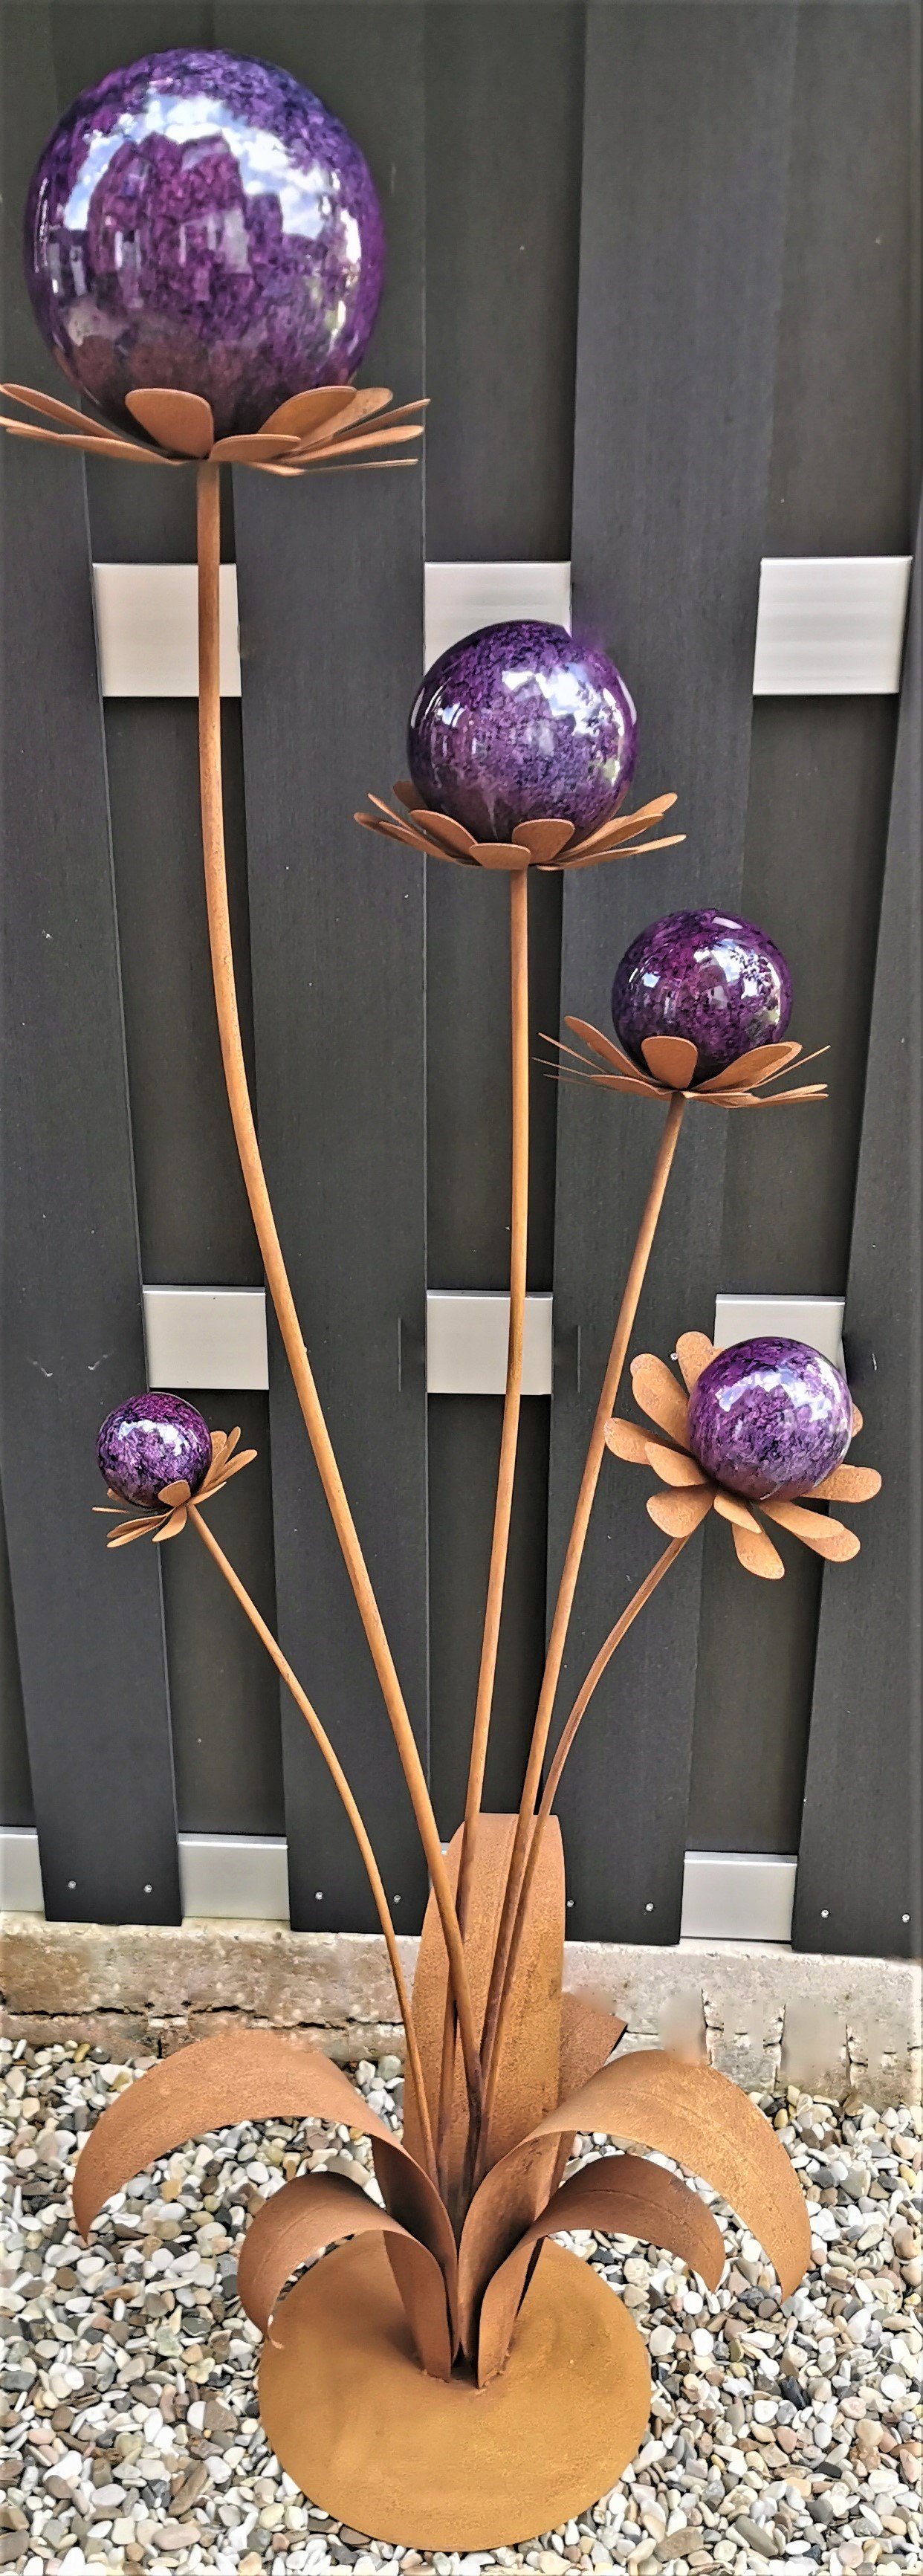 Jürgen Bocker Garten-Ambiente Gartenstecker Skulptur Blume Barcelona Corten 165 cm mit Kugel und Standfuß Cortenstahl Garten violett